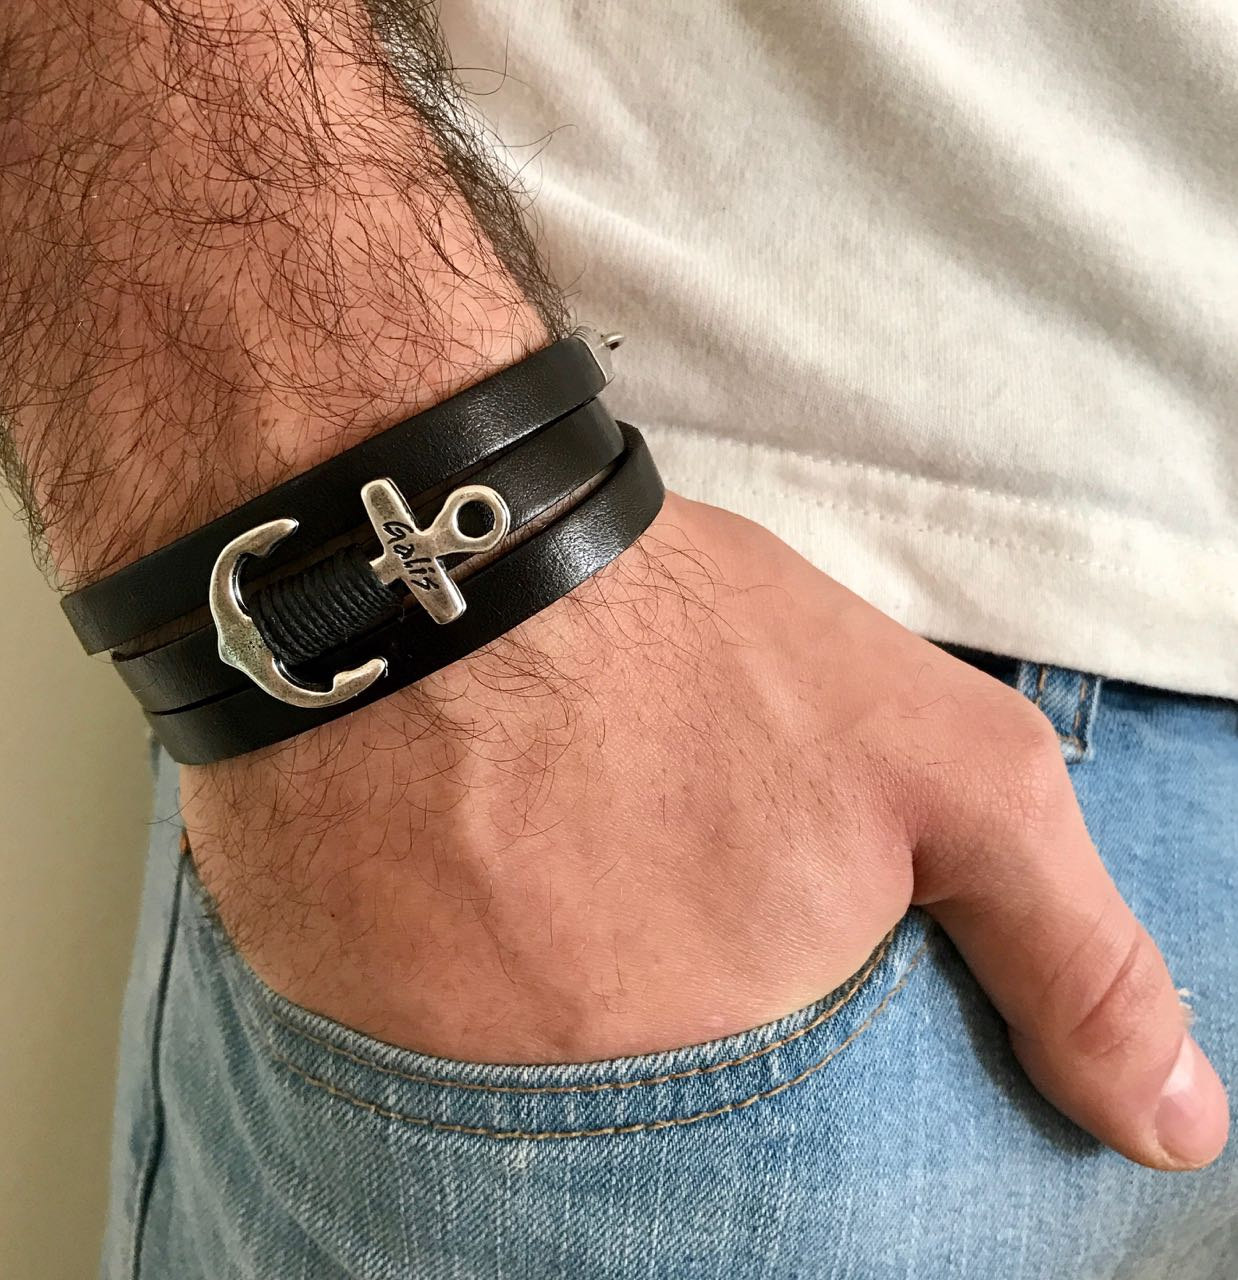 Men's Bracelet - Men's Anchor Bracelet - Men's Leather Bracelet - Men's Jewelry - Men's Gift -